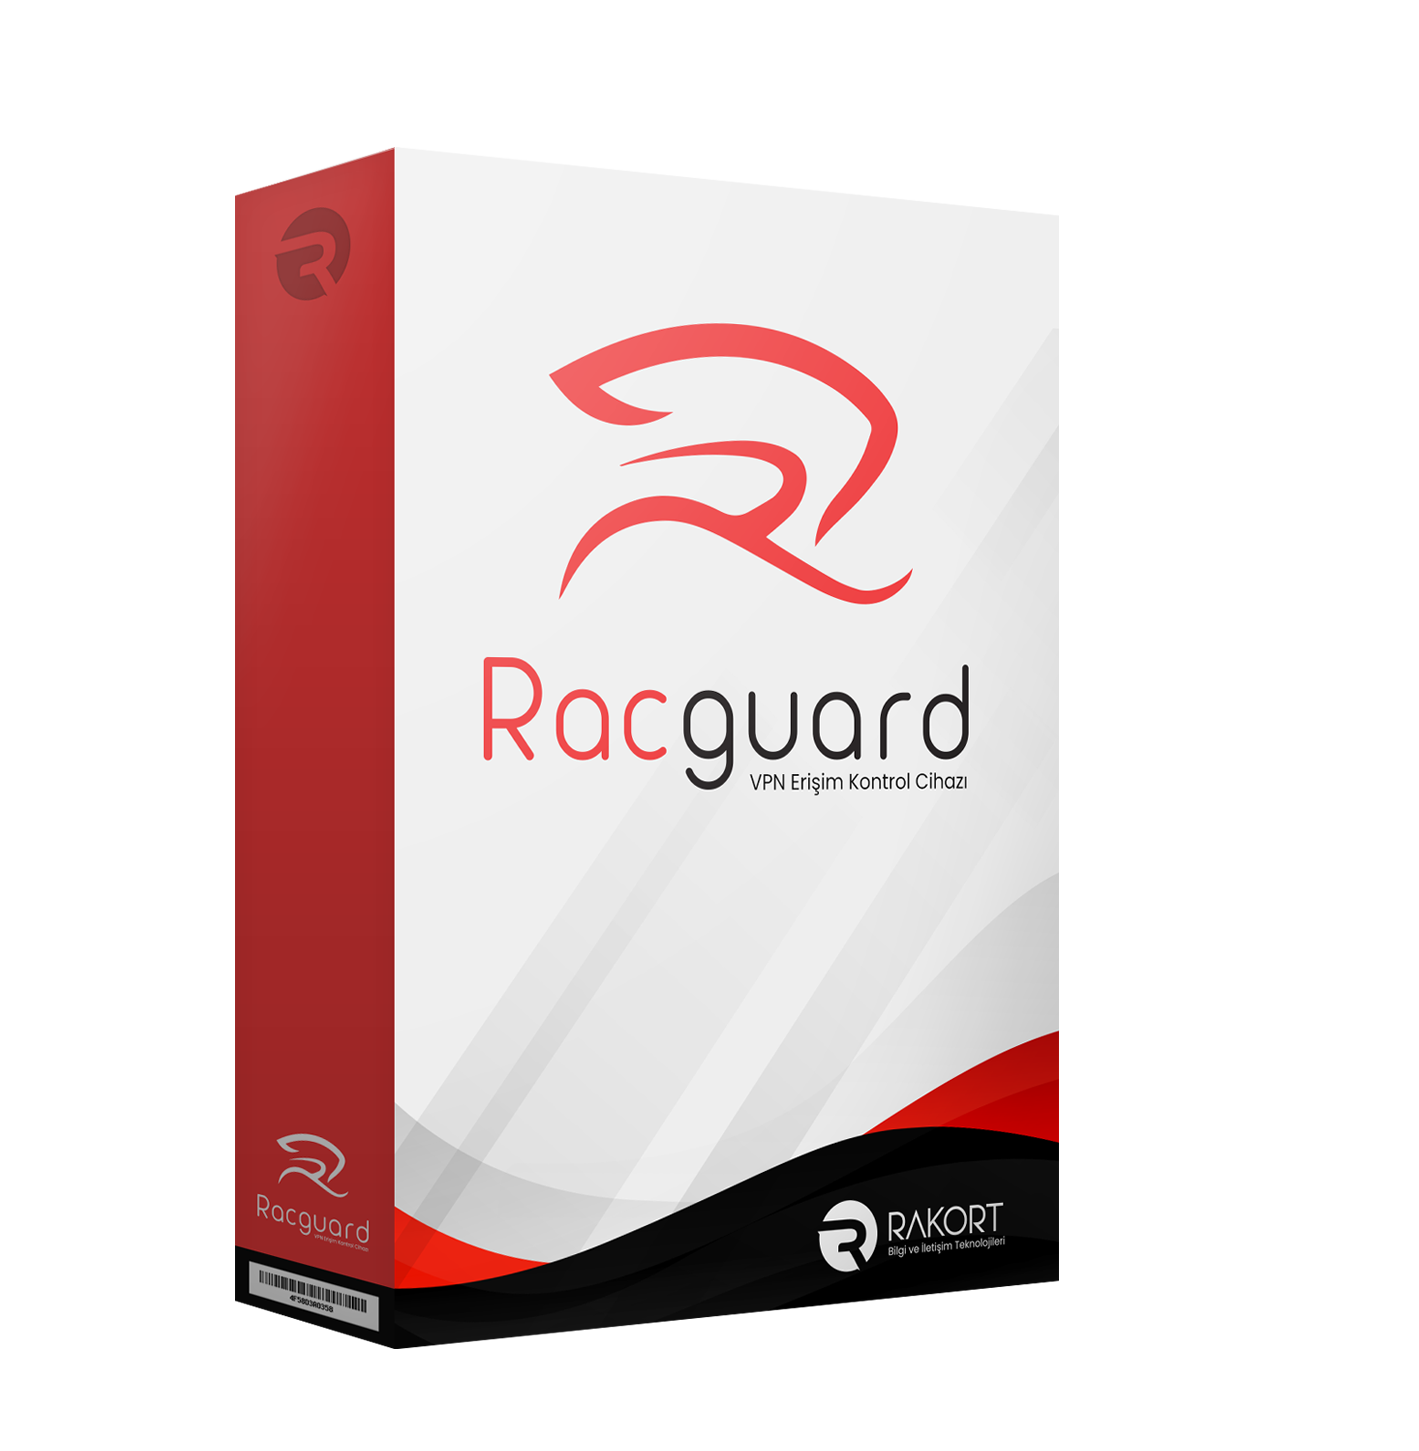 Racguard Ürün Kutusu